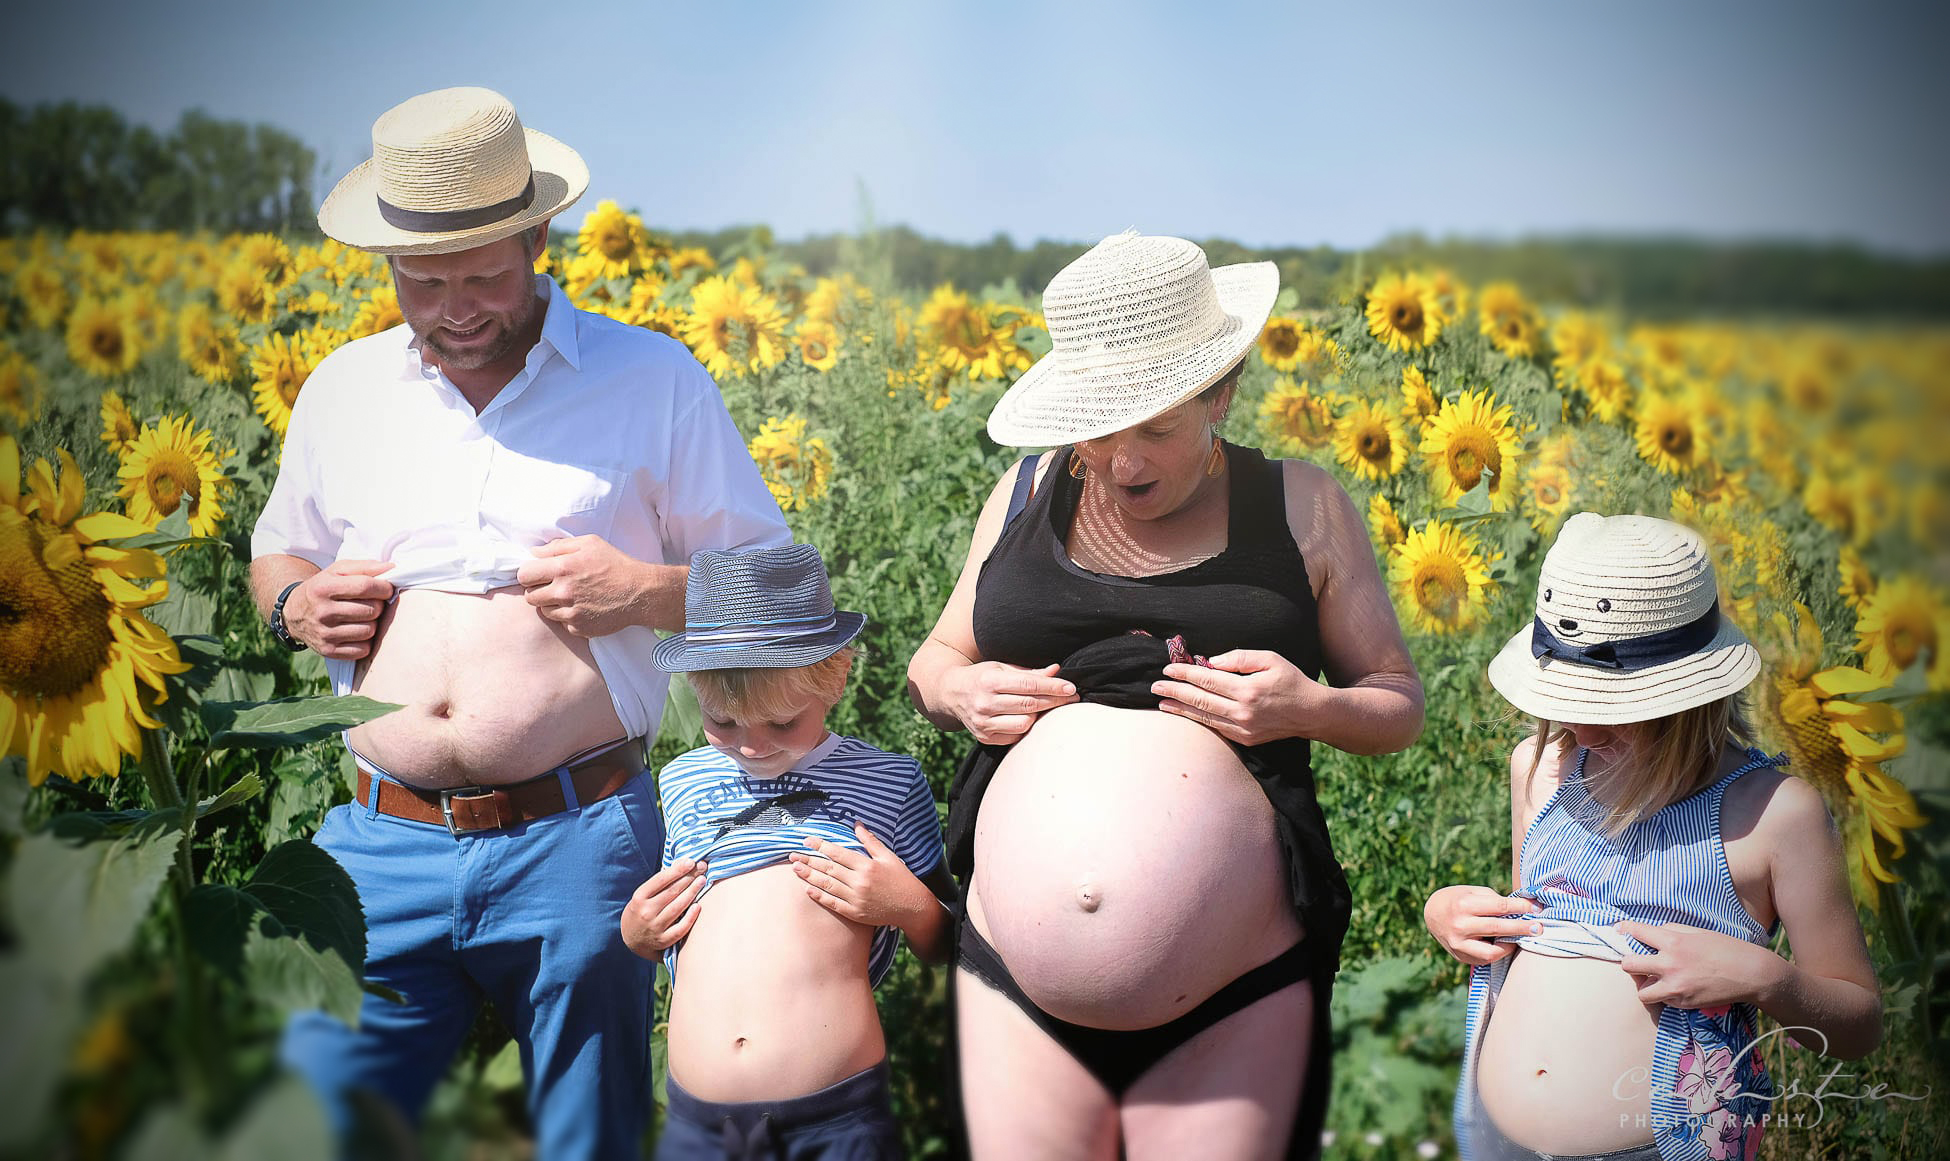 un couple avec leurs enfants dans un champs de tournesol regardent tous leurs ventres gonflés d'un air surpris (la mère est enceinte)